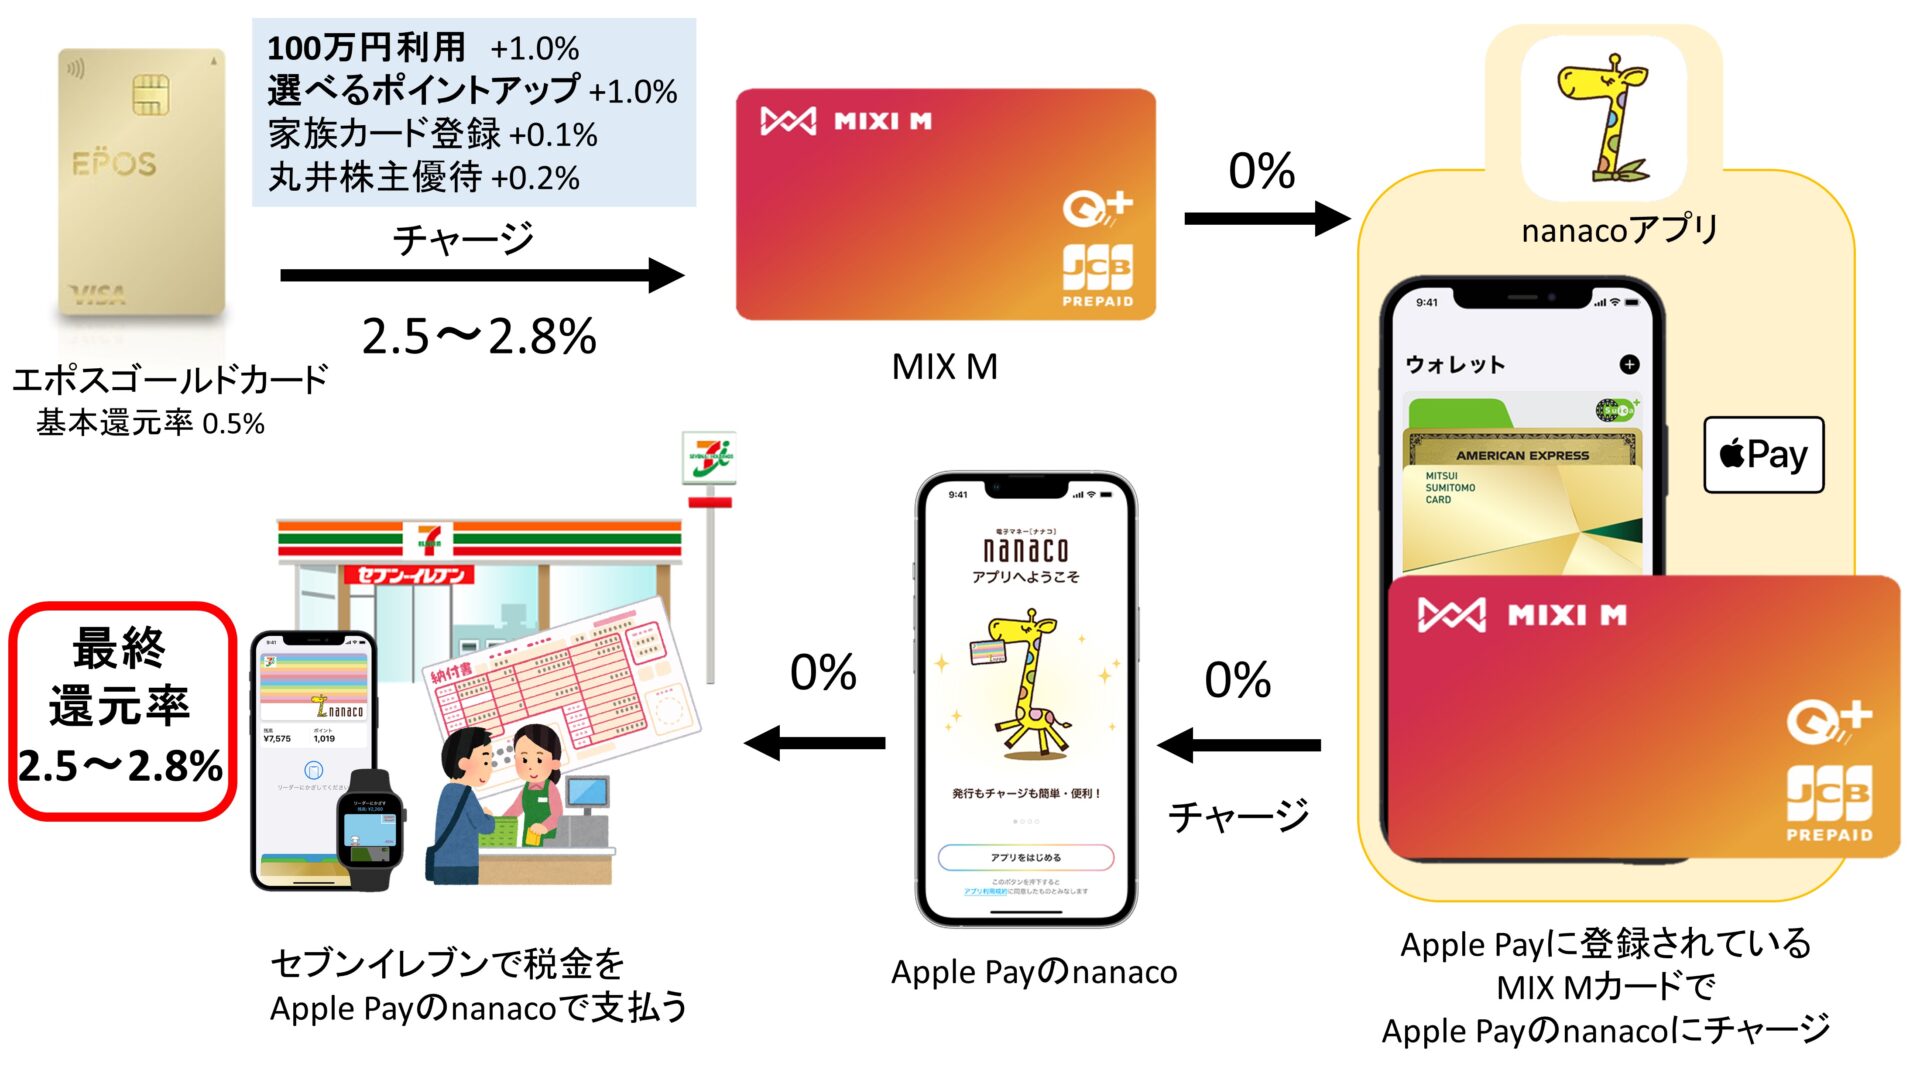 エポスゴールドカード→MIXI M→nanaco/waonの還元率